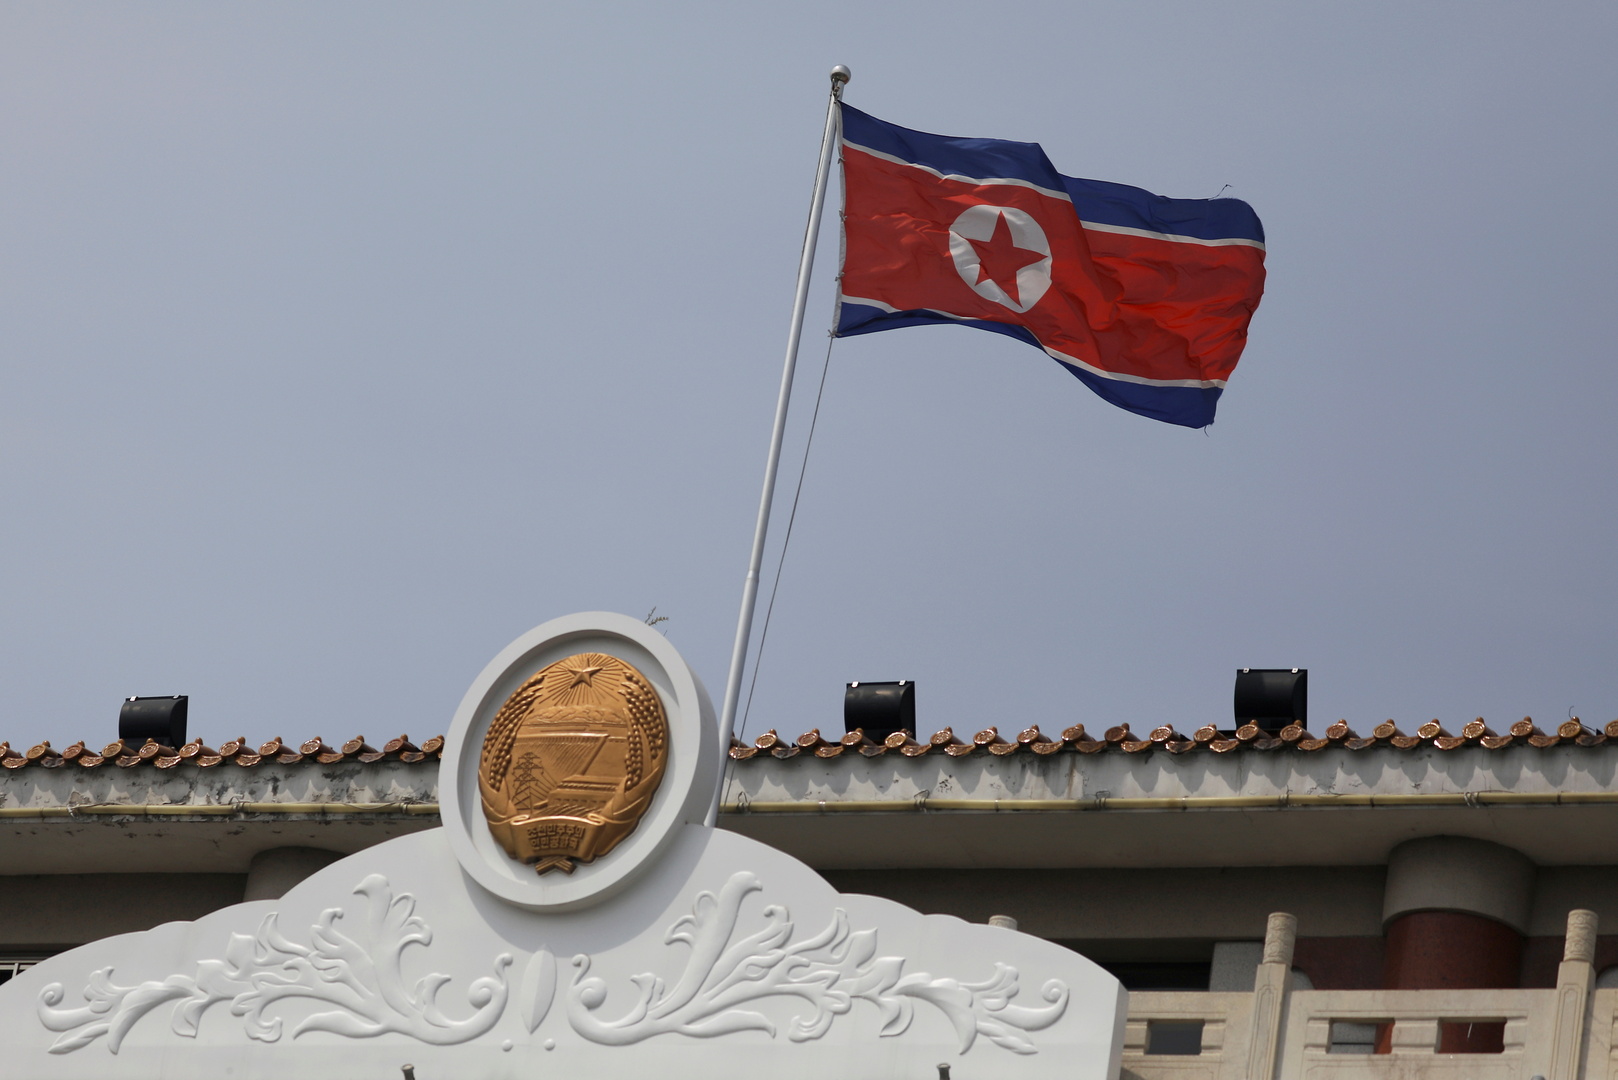 كوريا الشمالية مجهزة تقنيا لعقد قمة عبر الفيديو مع الجنوب